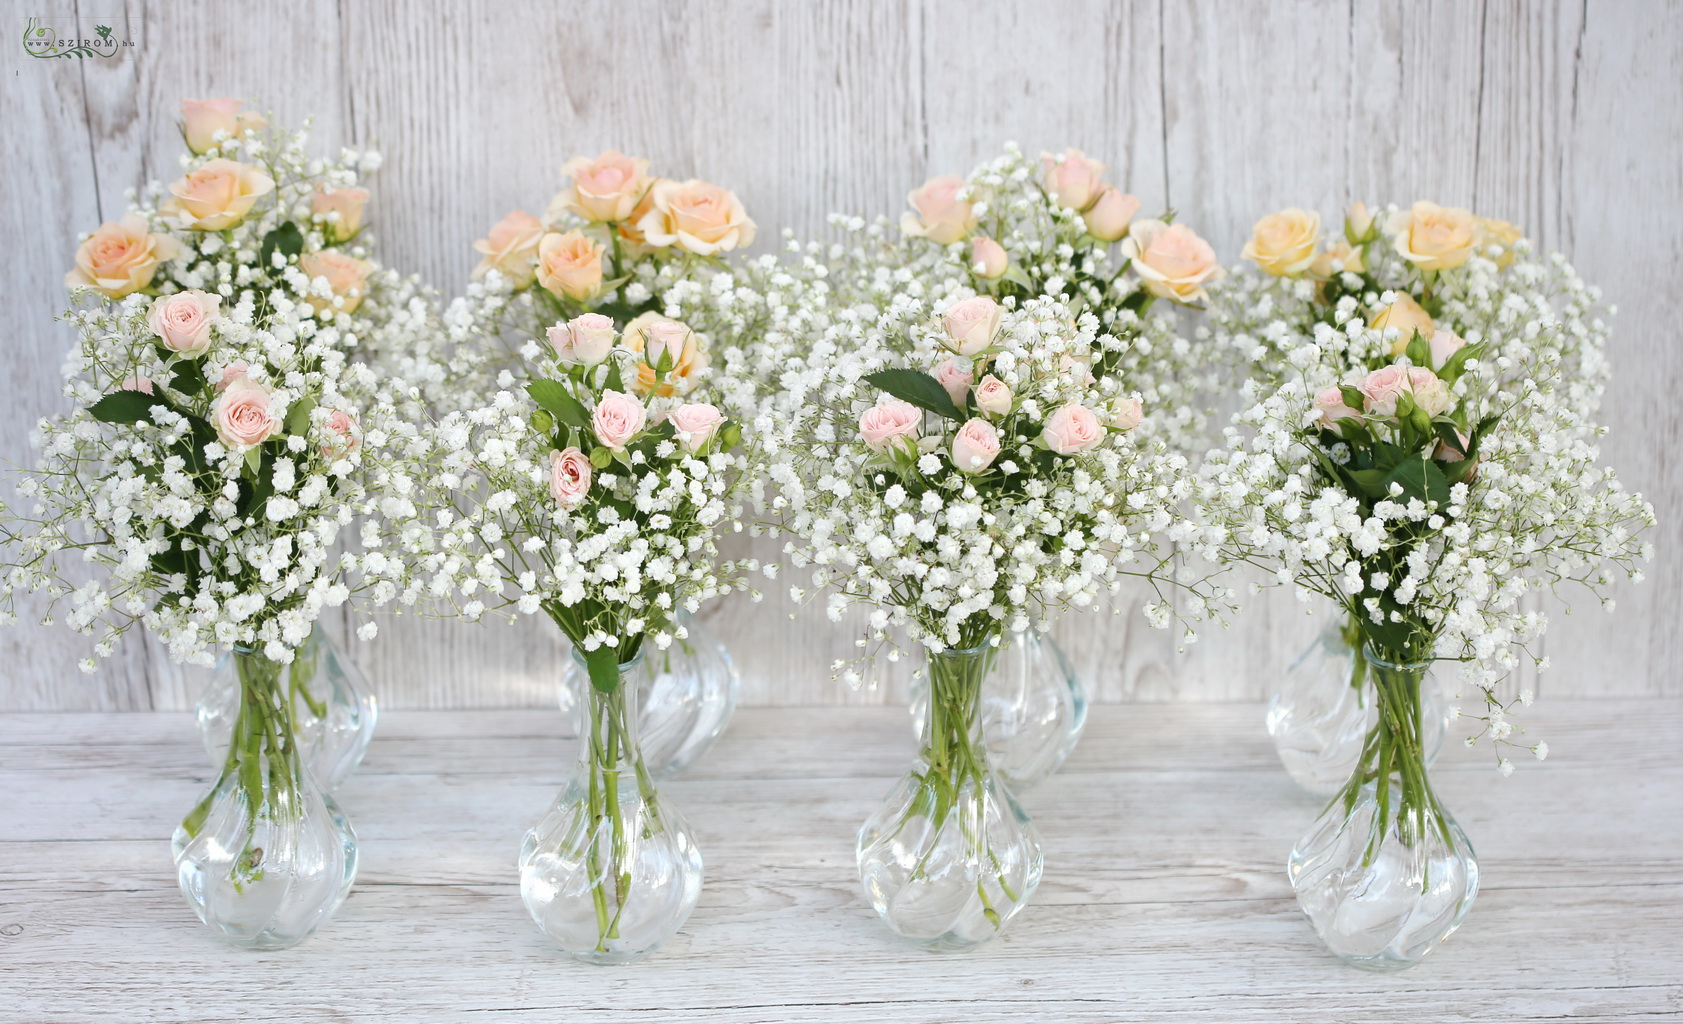 Esküvői asztaldísz kis vázában 1 db (rezgő, bokros rózsa, barack, fehér)